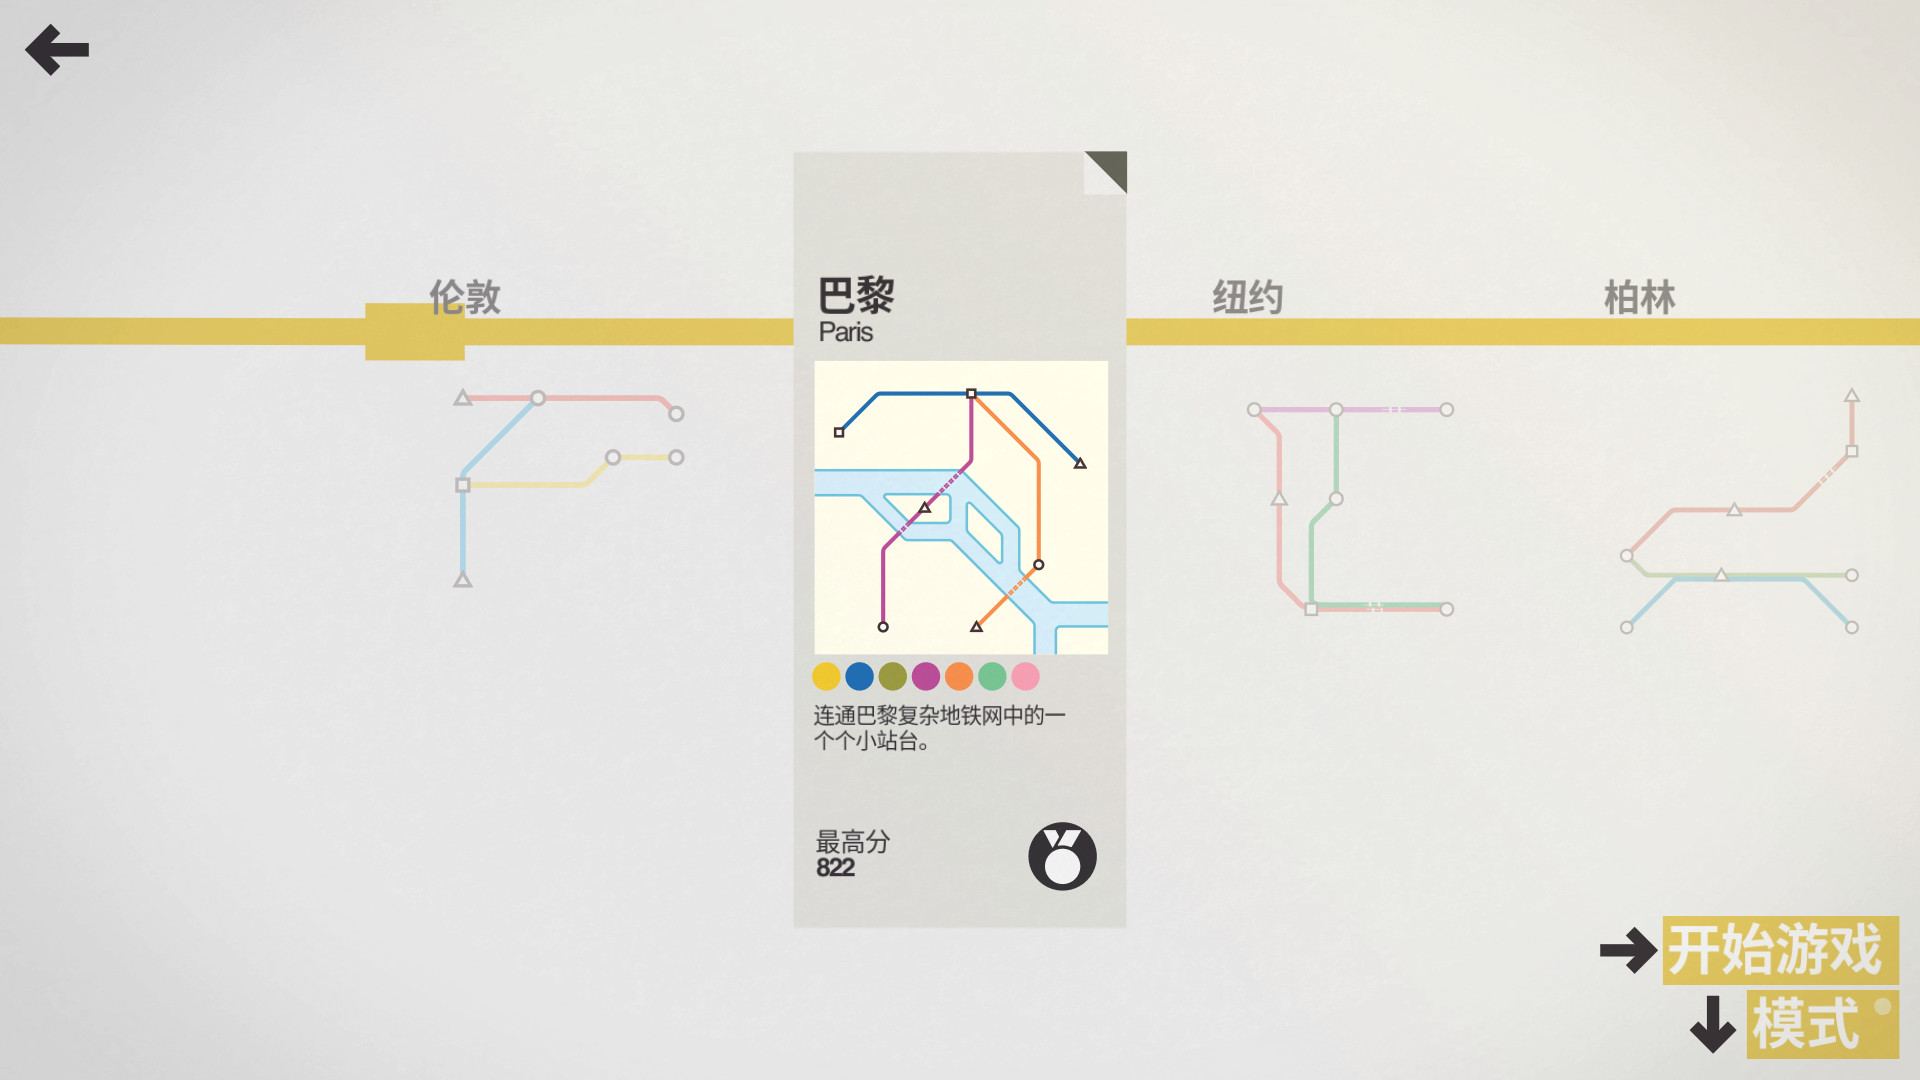 迷你地铁/迷你都市/模拟地铁/Mini Metro插图3